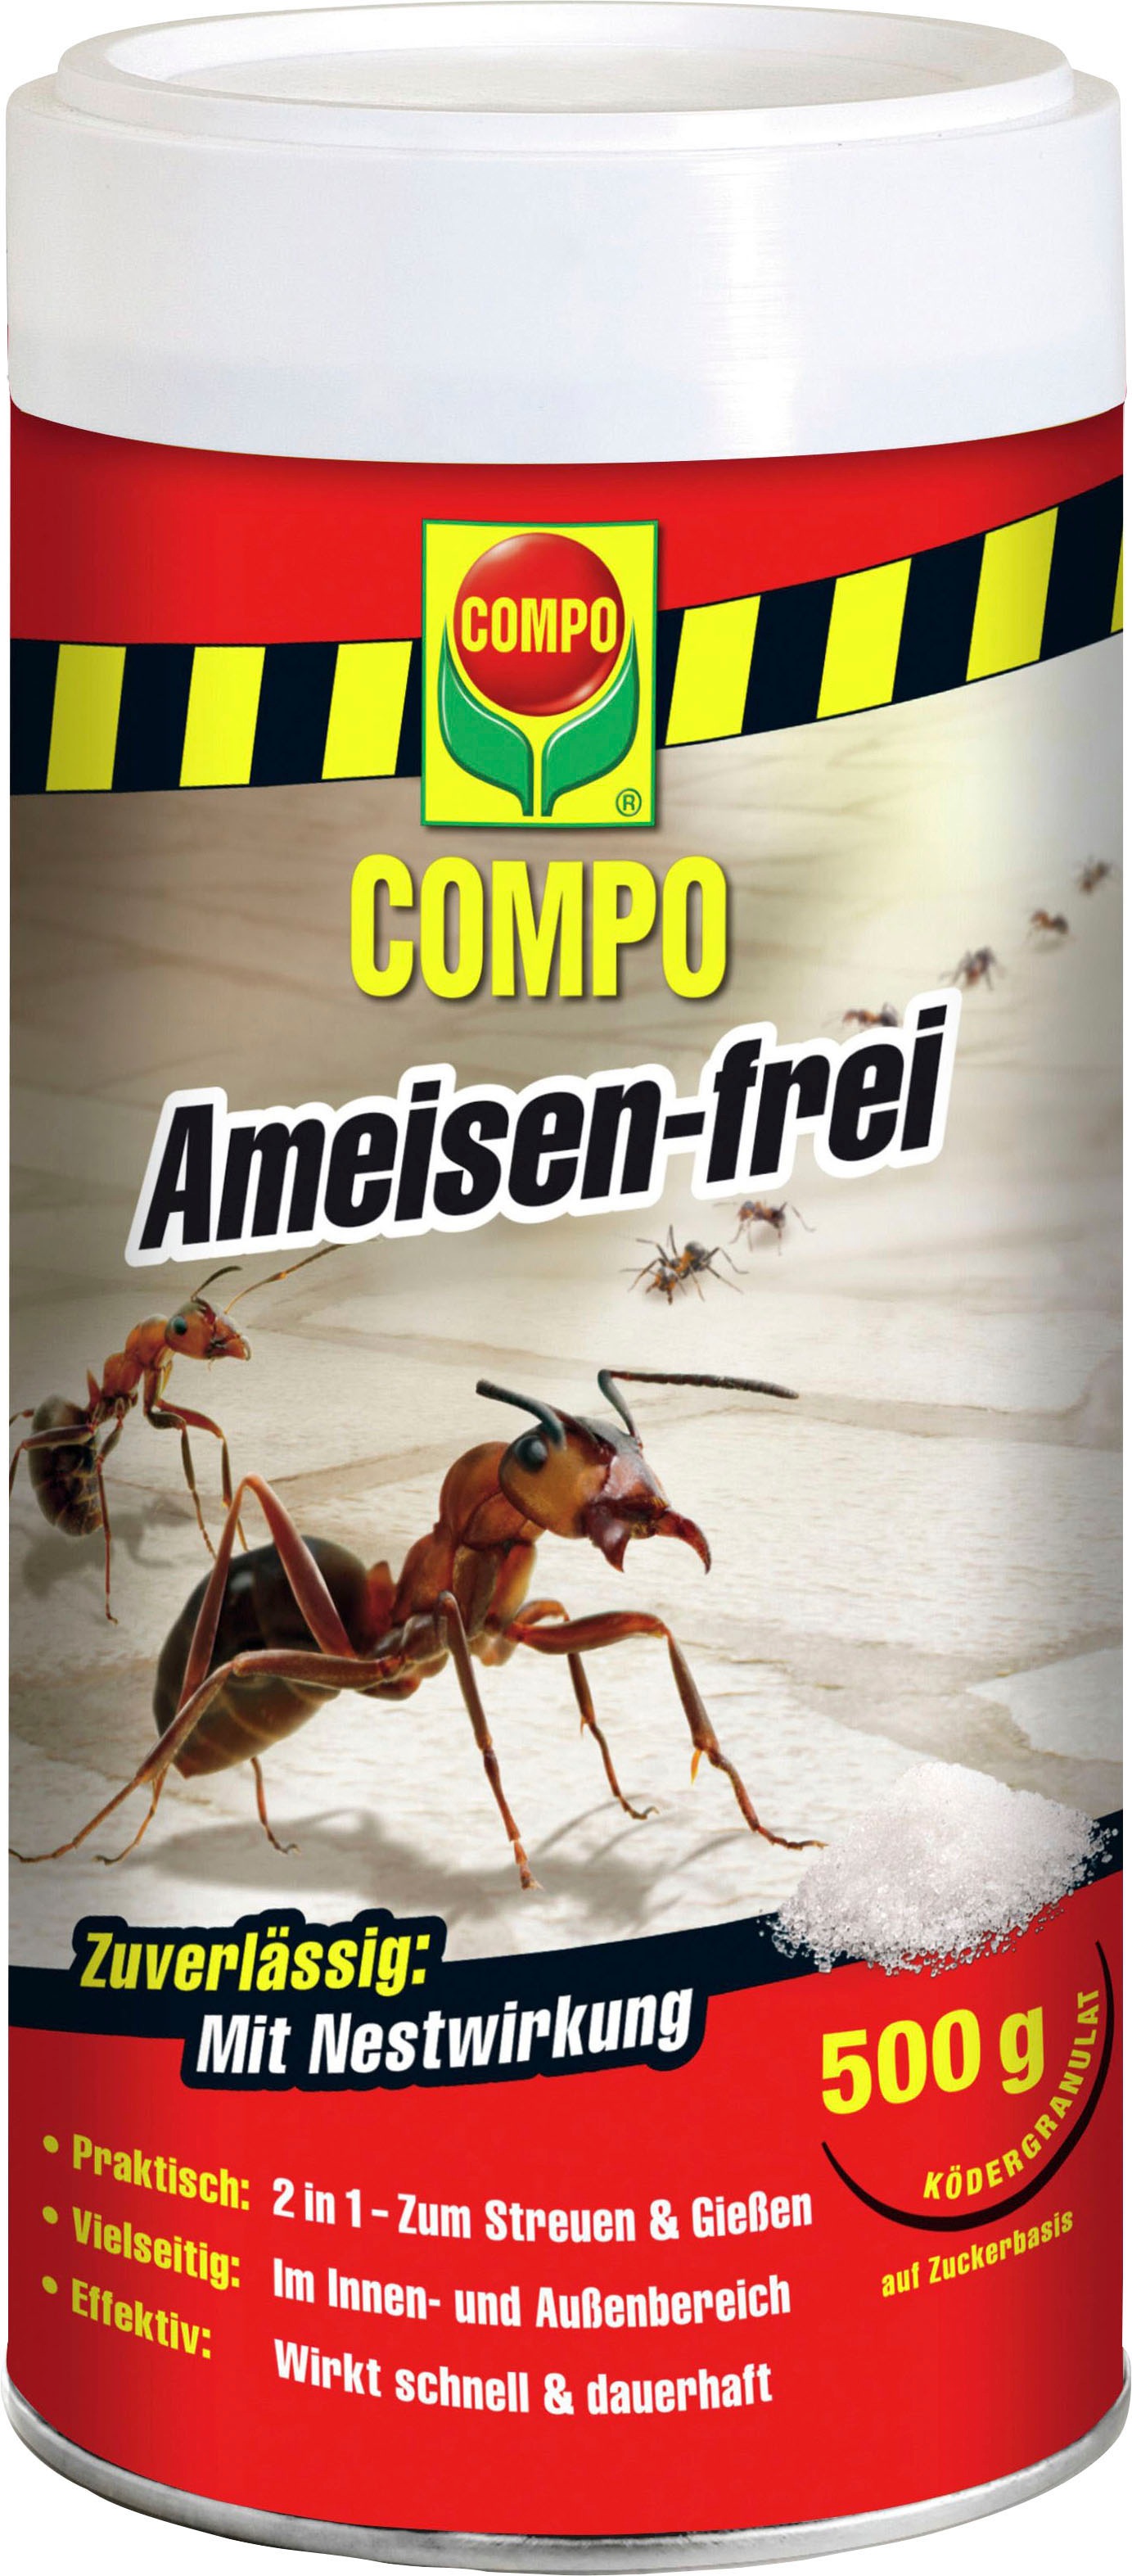 Compo Ameisengift »Ameisen-frei«